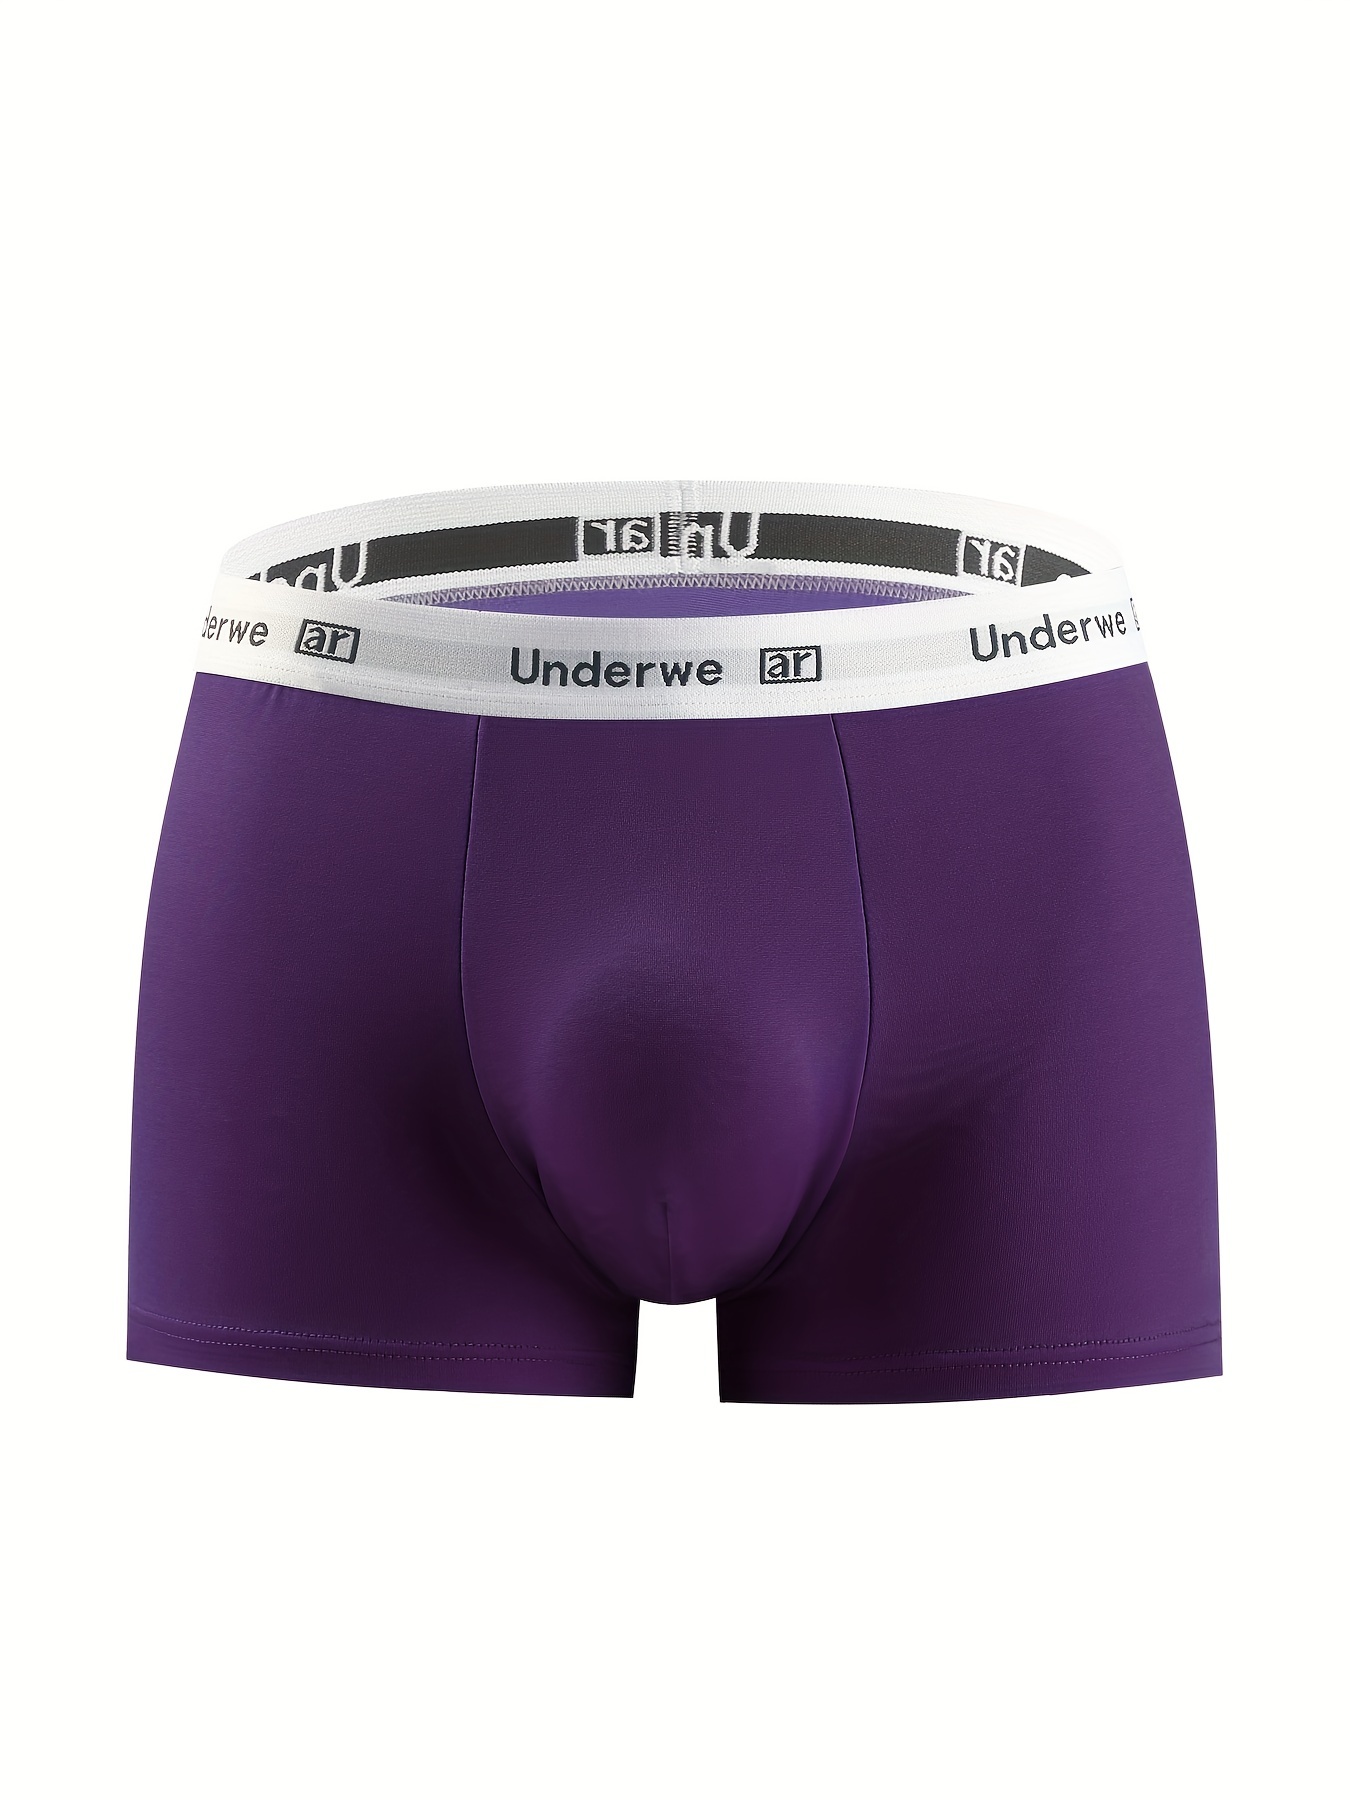 Underwear Expert Well Hung Meundies Boxer Brief Men's Best ENDOWED Underwear  Cushion Comfort Purple Padded removable Sport Indigo Lavender -  UK